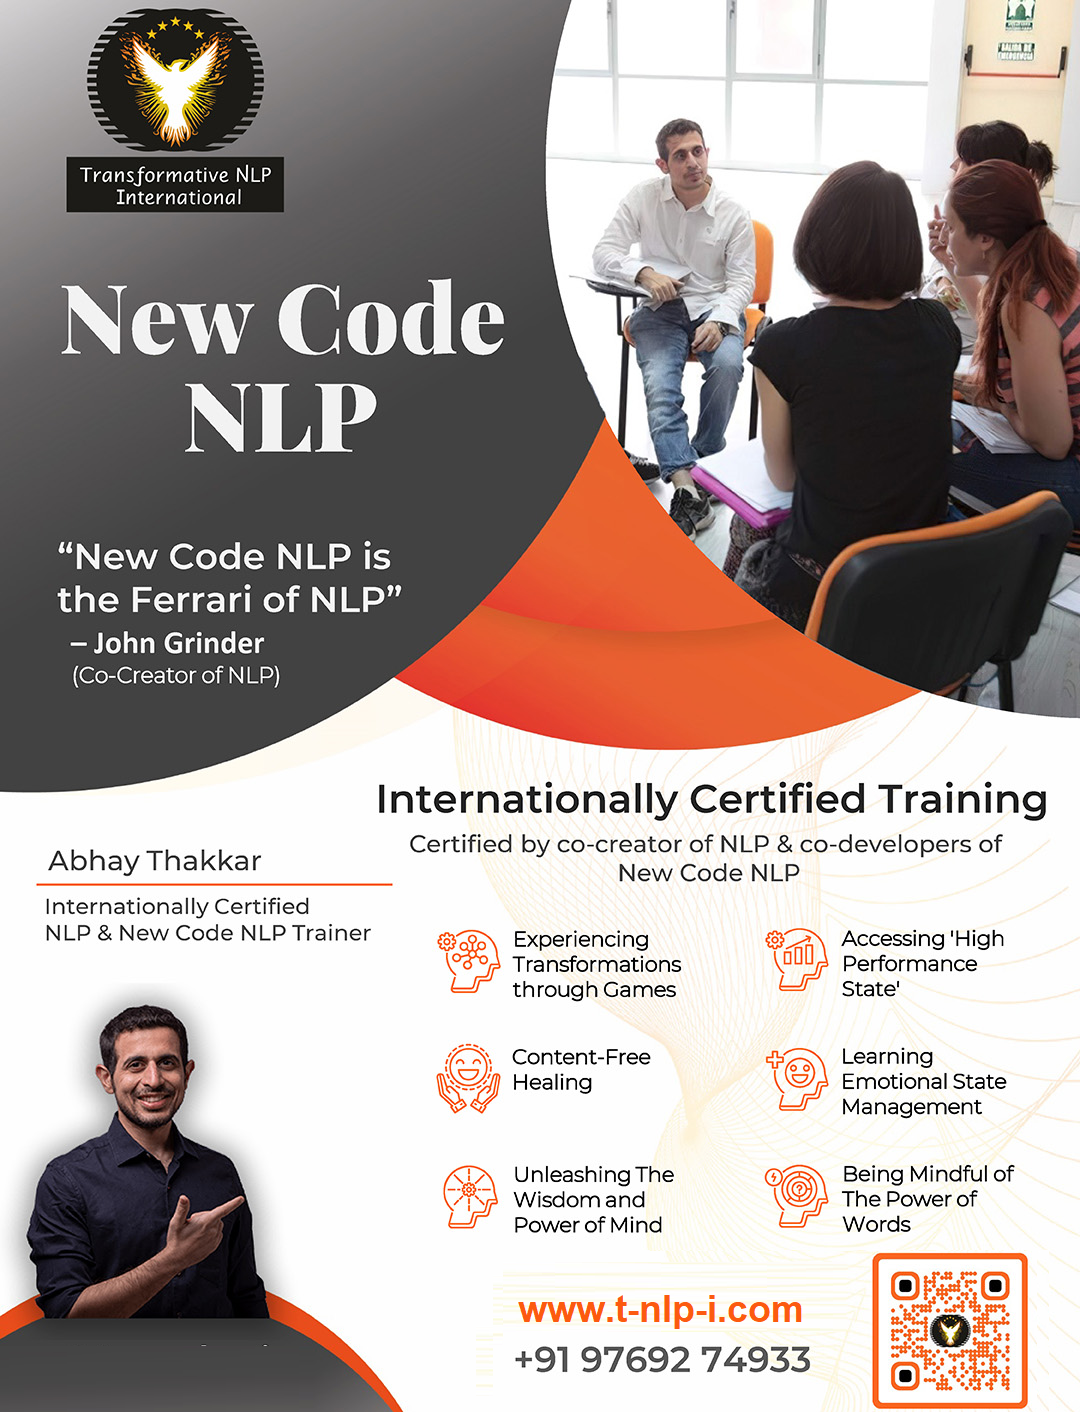 Internationally Certified New Code NLP Training by Abhay Thakkar - Thiruvananthapuram